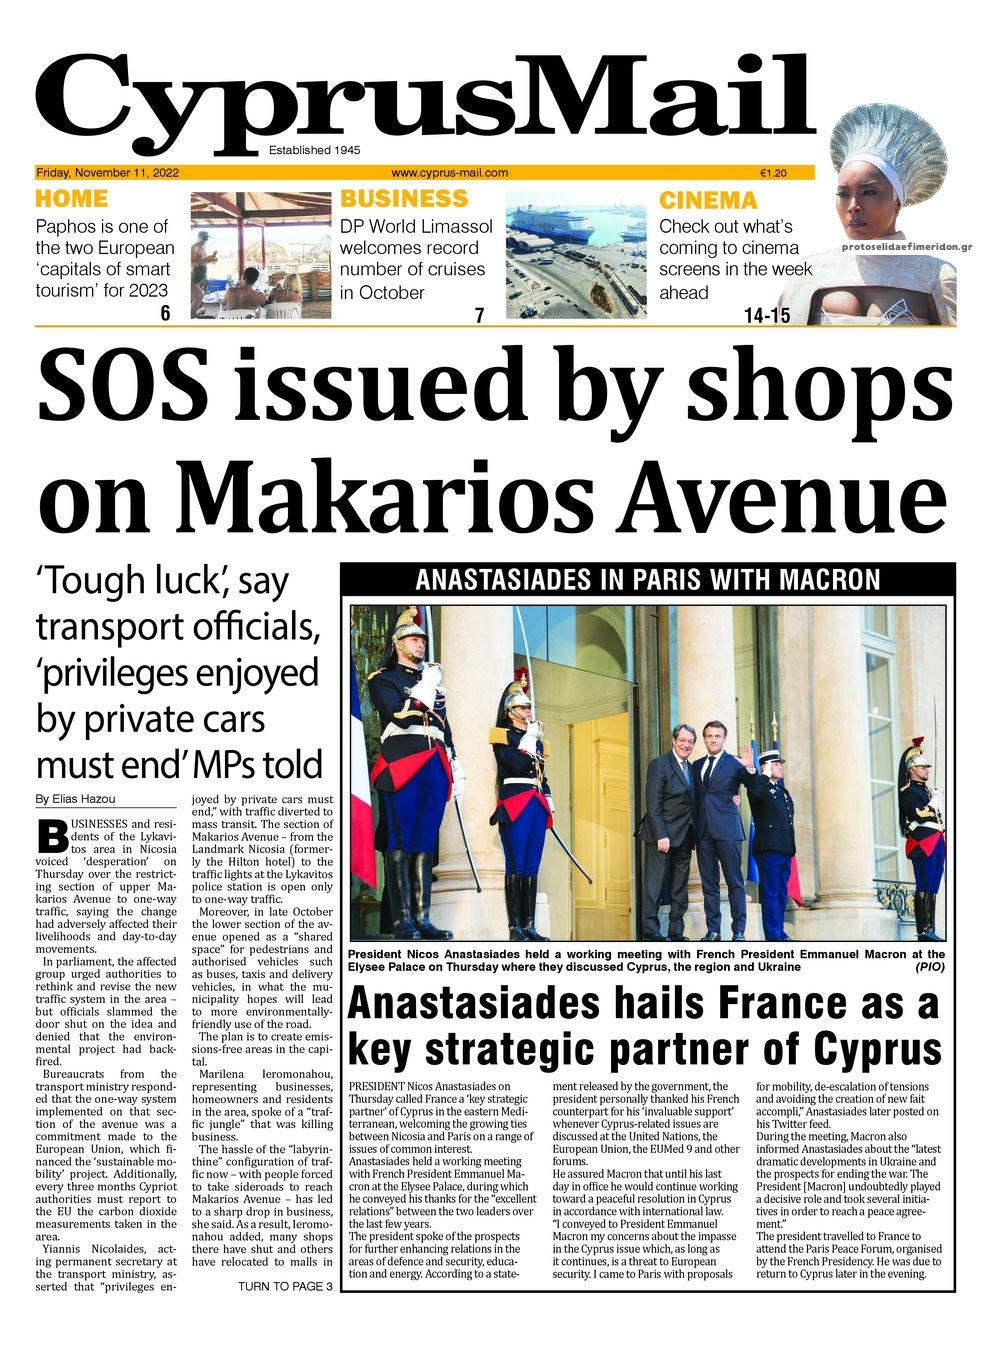 Πρωτοσέλιδο εφημερίδας Cyprus Mail